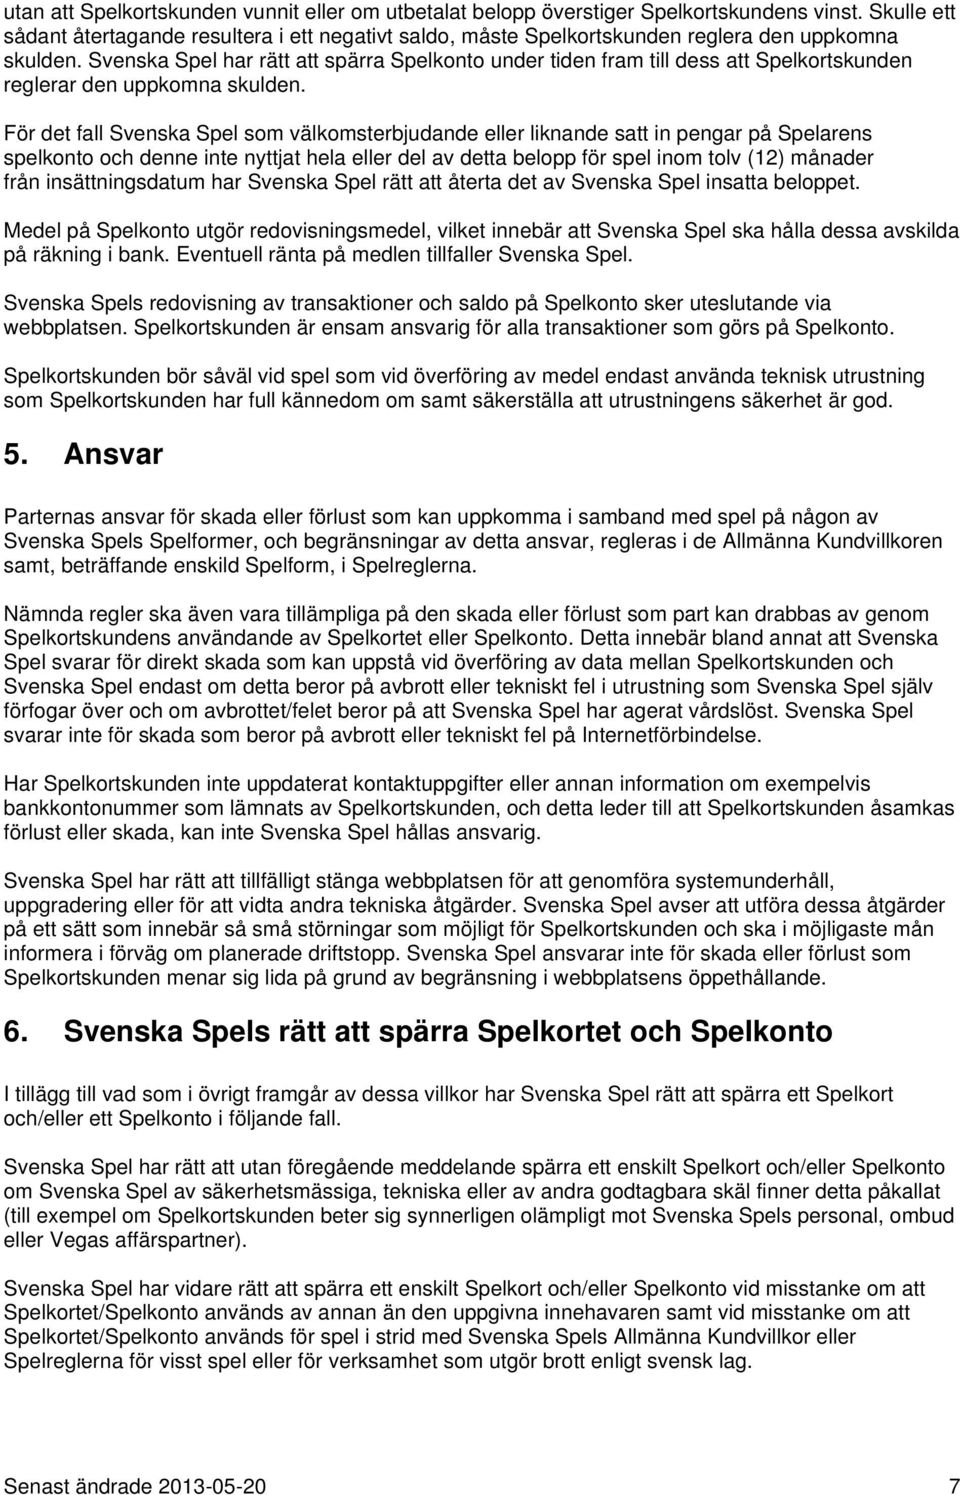 Svenska Spel har rätt att spärra Spelkonto under tiden fram till dess att Spelkortskunden reglerar den uppkomna skulden.